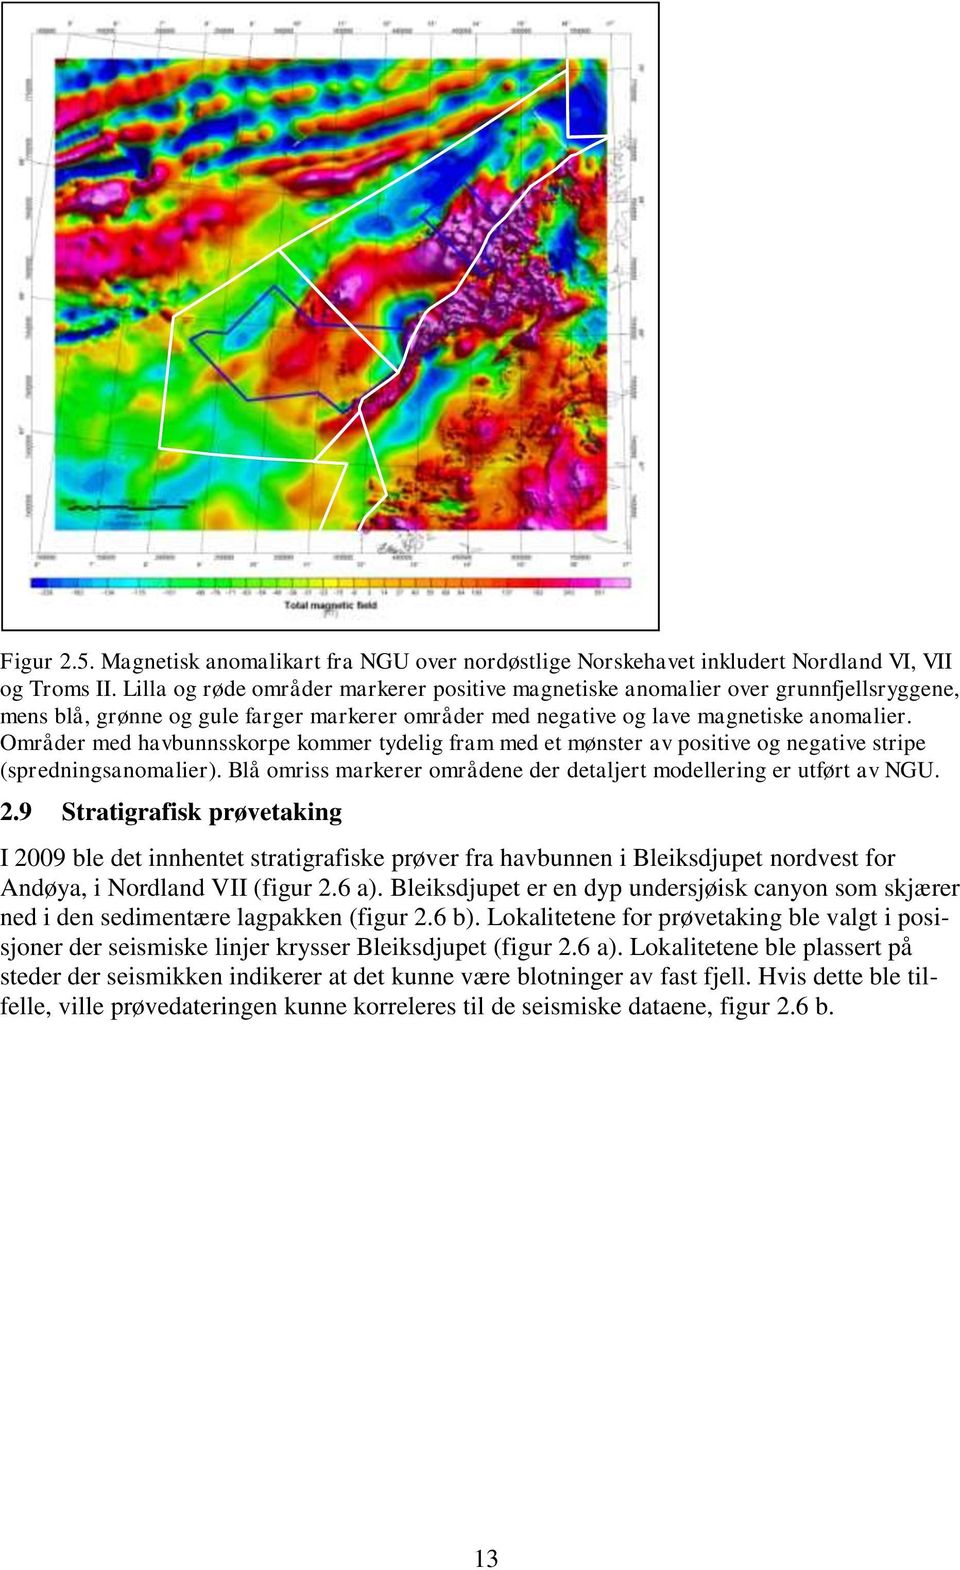 områder med lav magnetiske og sedimenter. Troms II. Blå Lilla omriss og markerer røde områdene områder der markerer detaljert modellering positive er utført magnetiske av NGU.